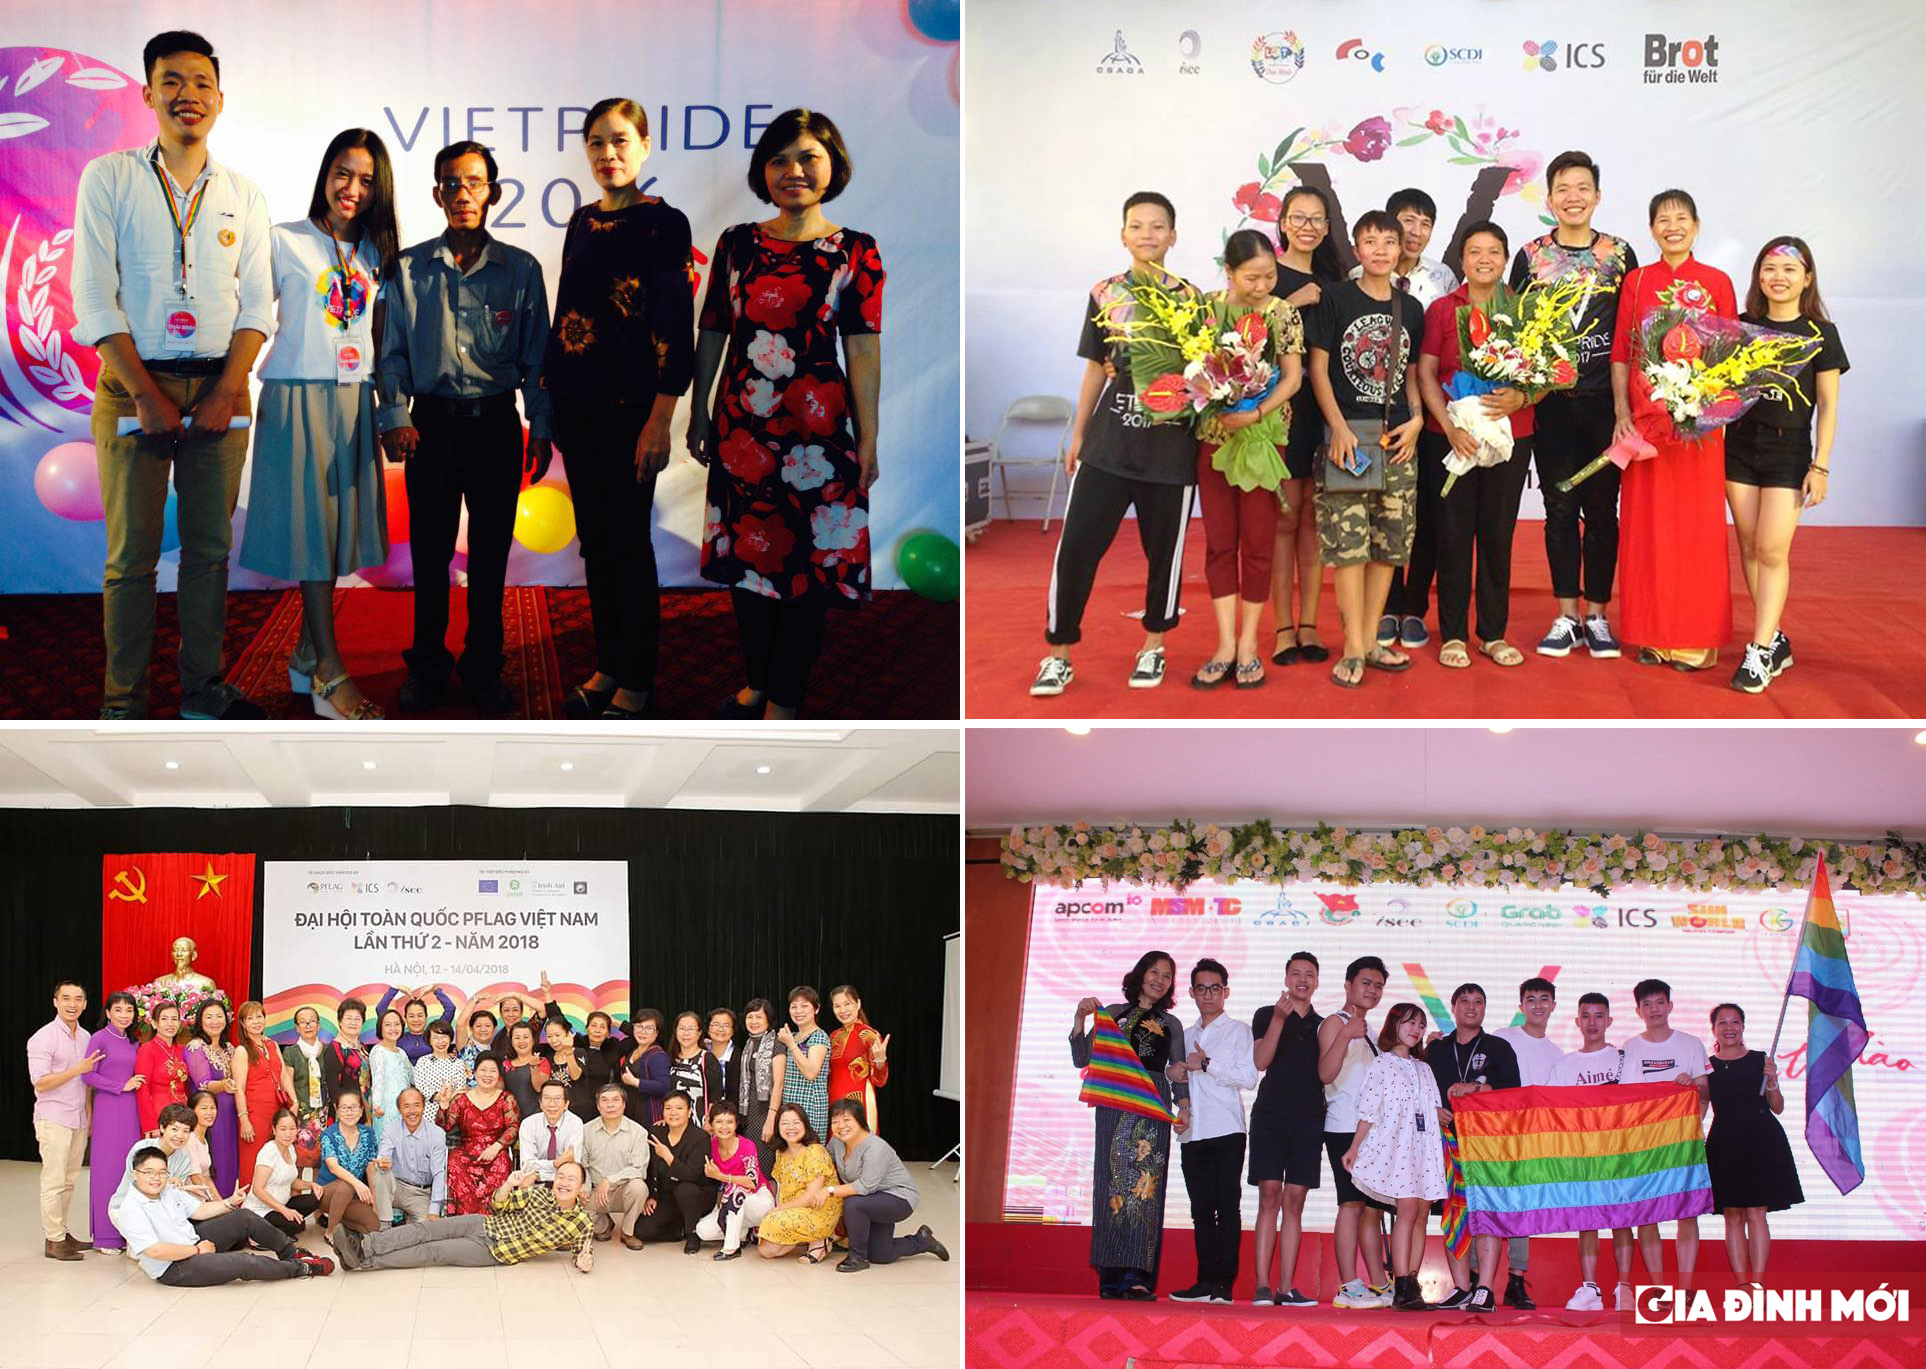   Hành trình của Việt Hà cũng như những đứa con LGBT trở nên trọn vẹn hơn khi có cha mẹ đồng hành.  